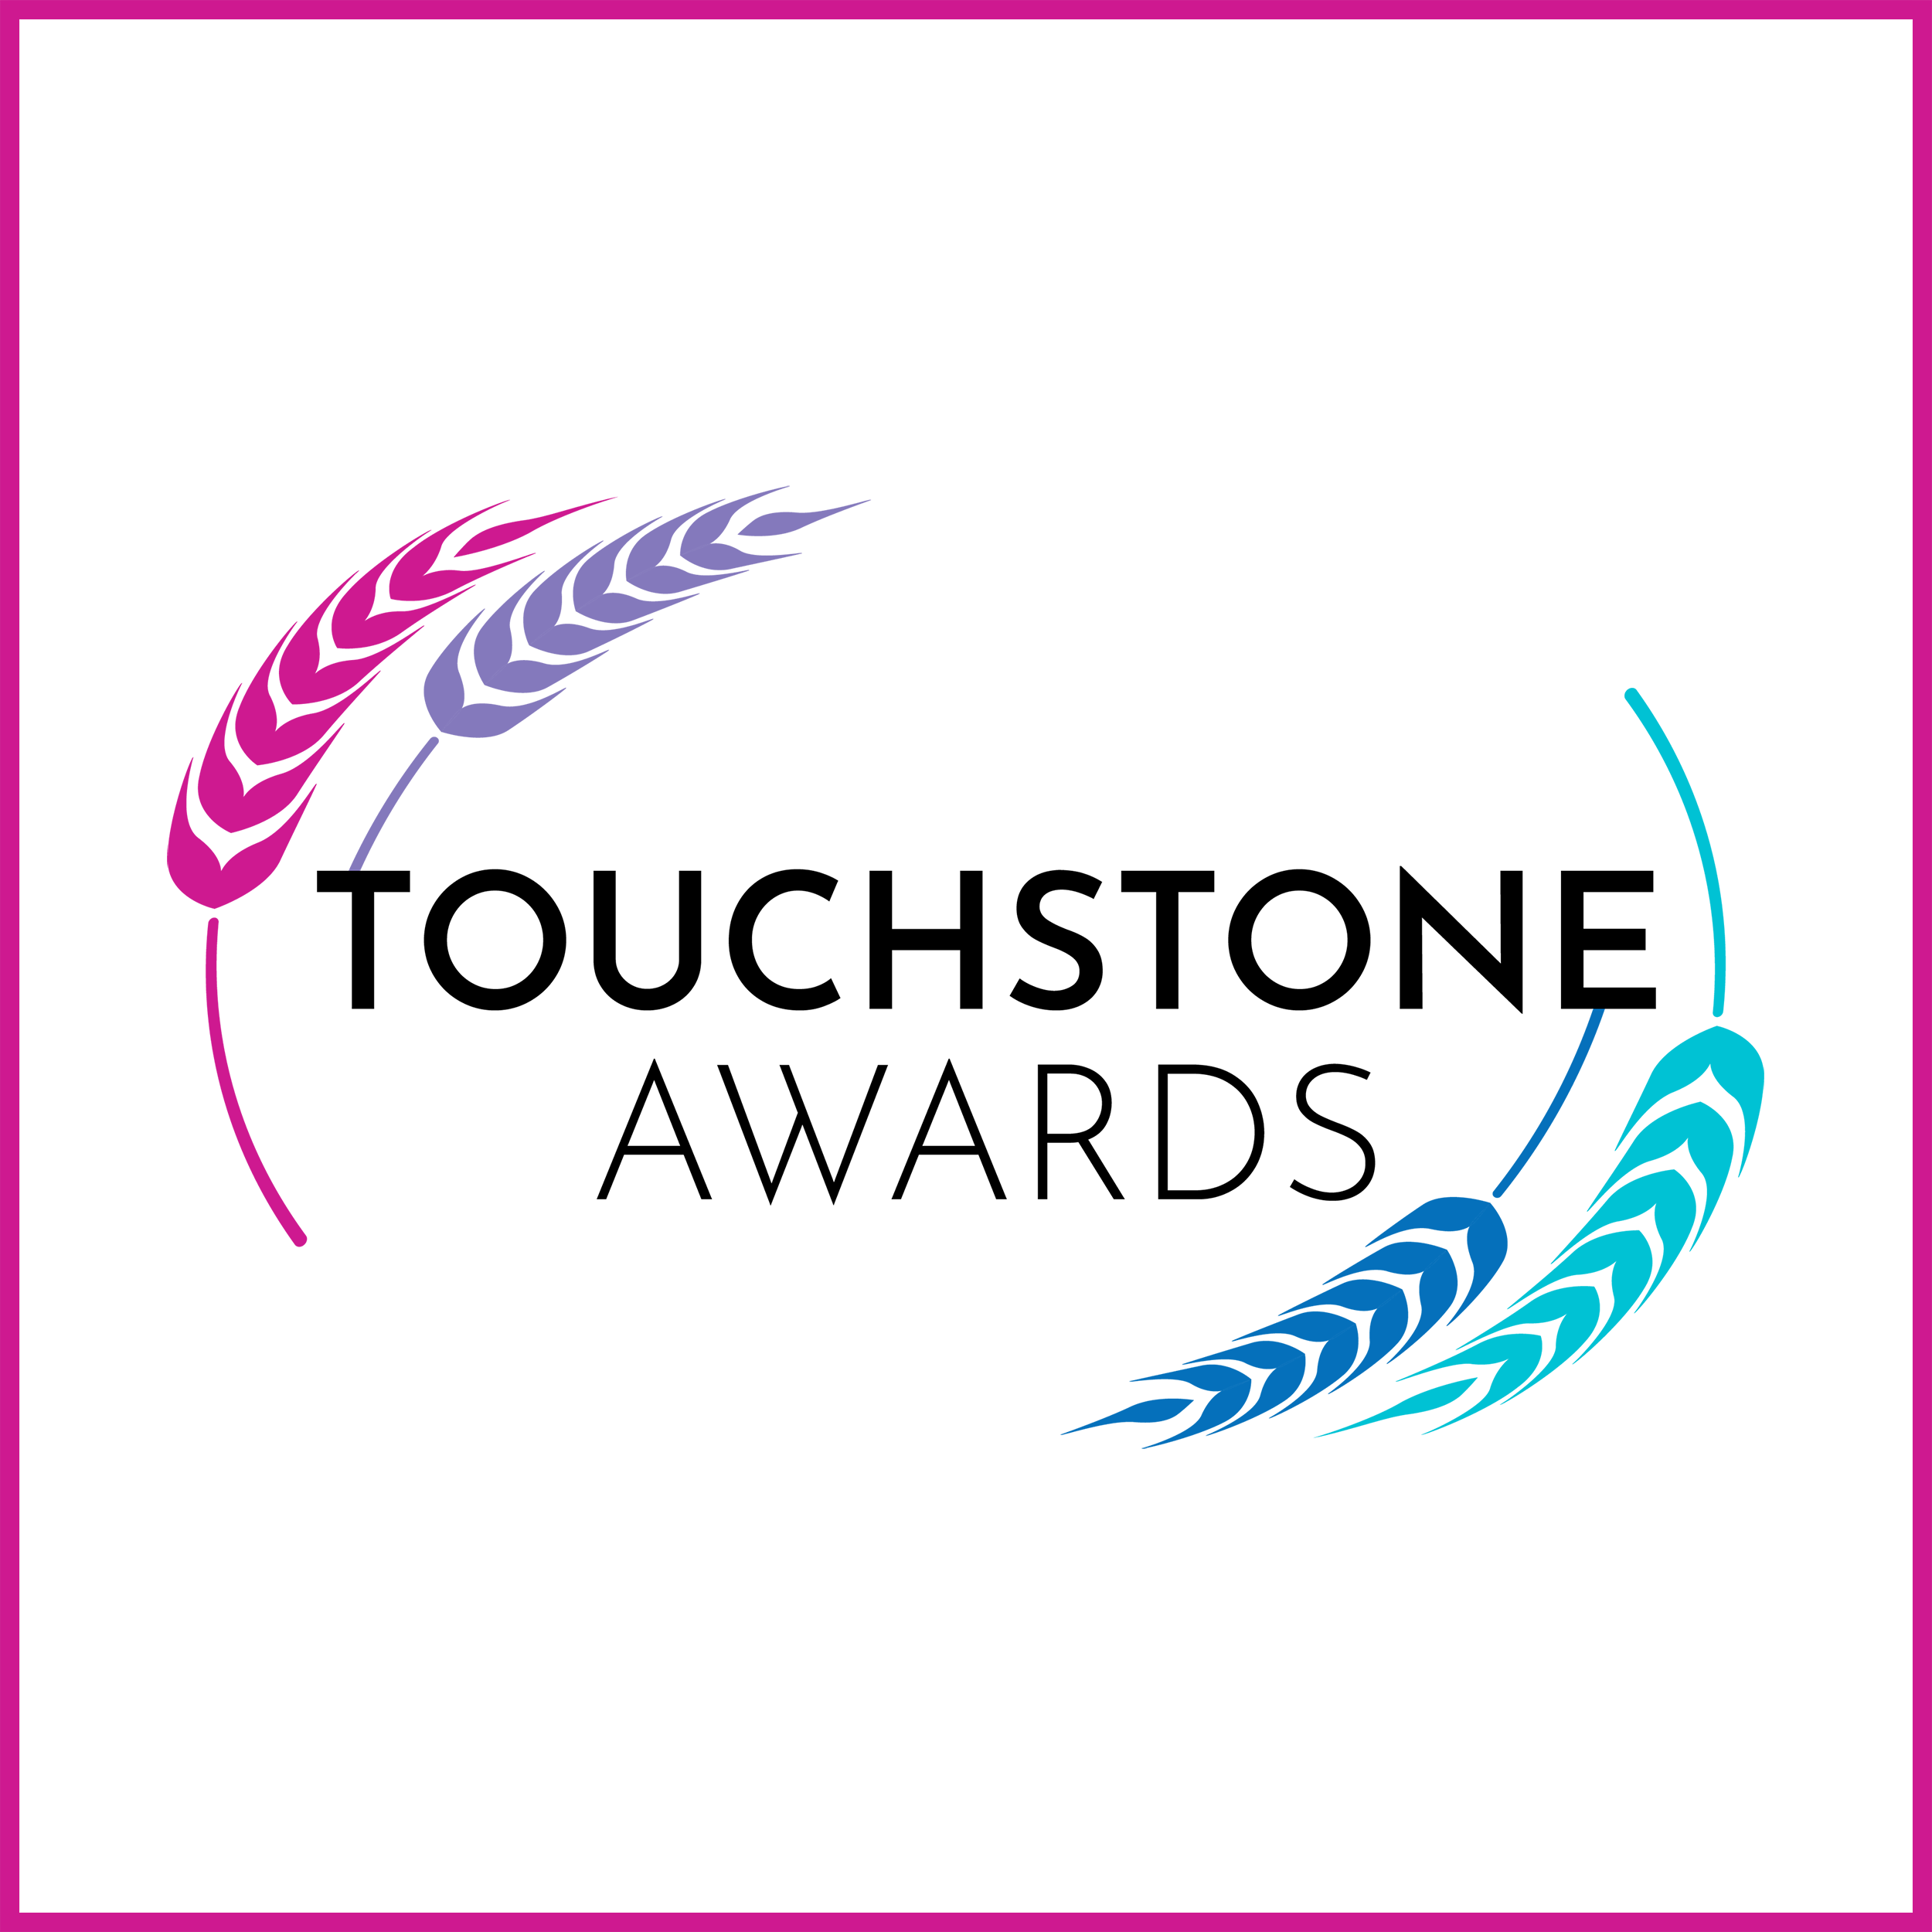 Touchstone Awards